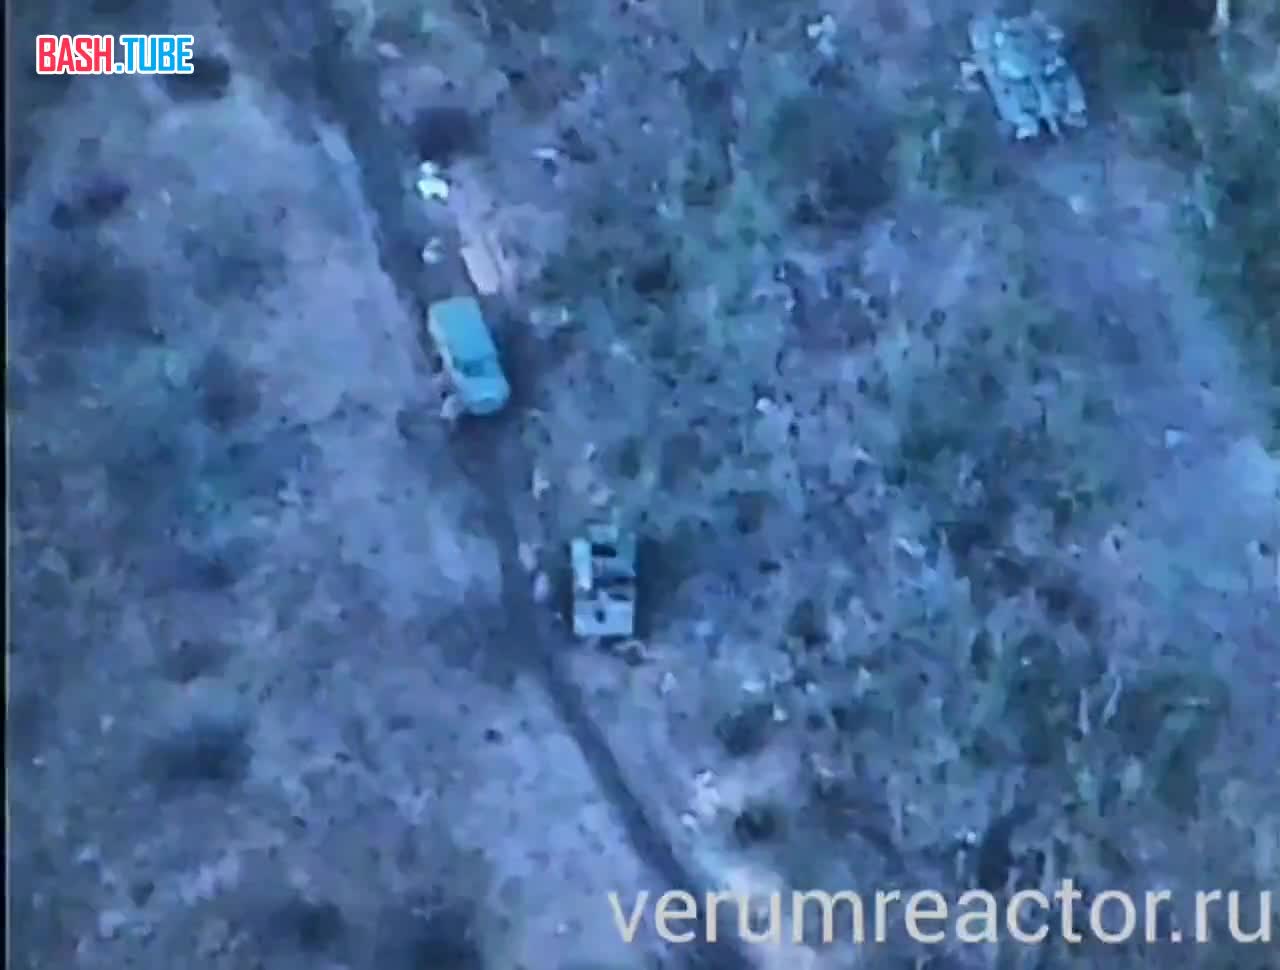  Артиллерия ВС РФ уничтожила бронеавтомобиль ВСУ Казак с пехотой противника под Артемовском